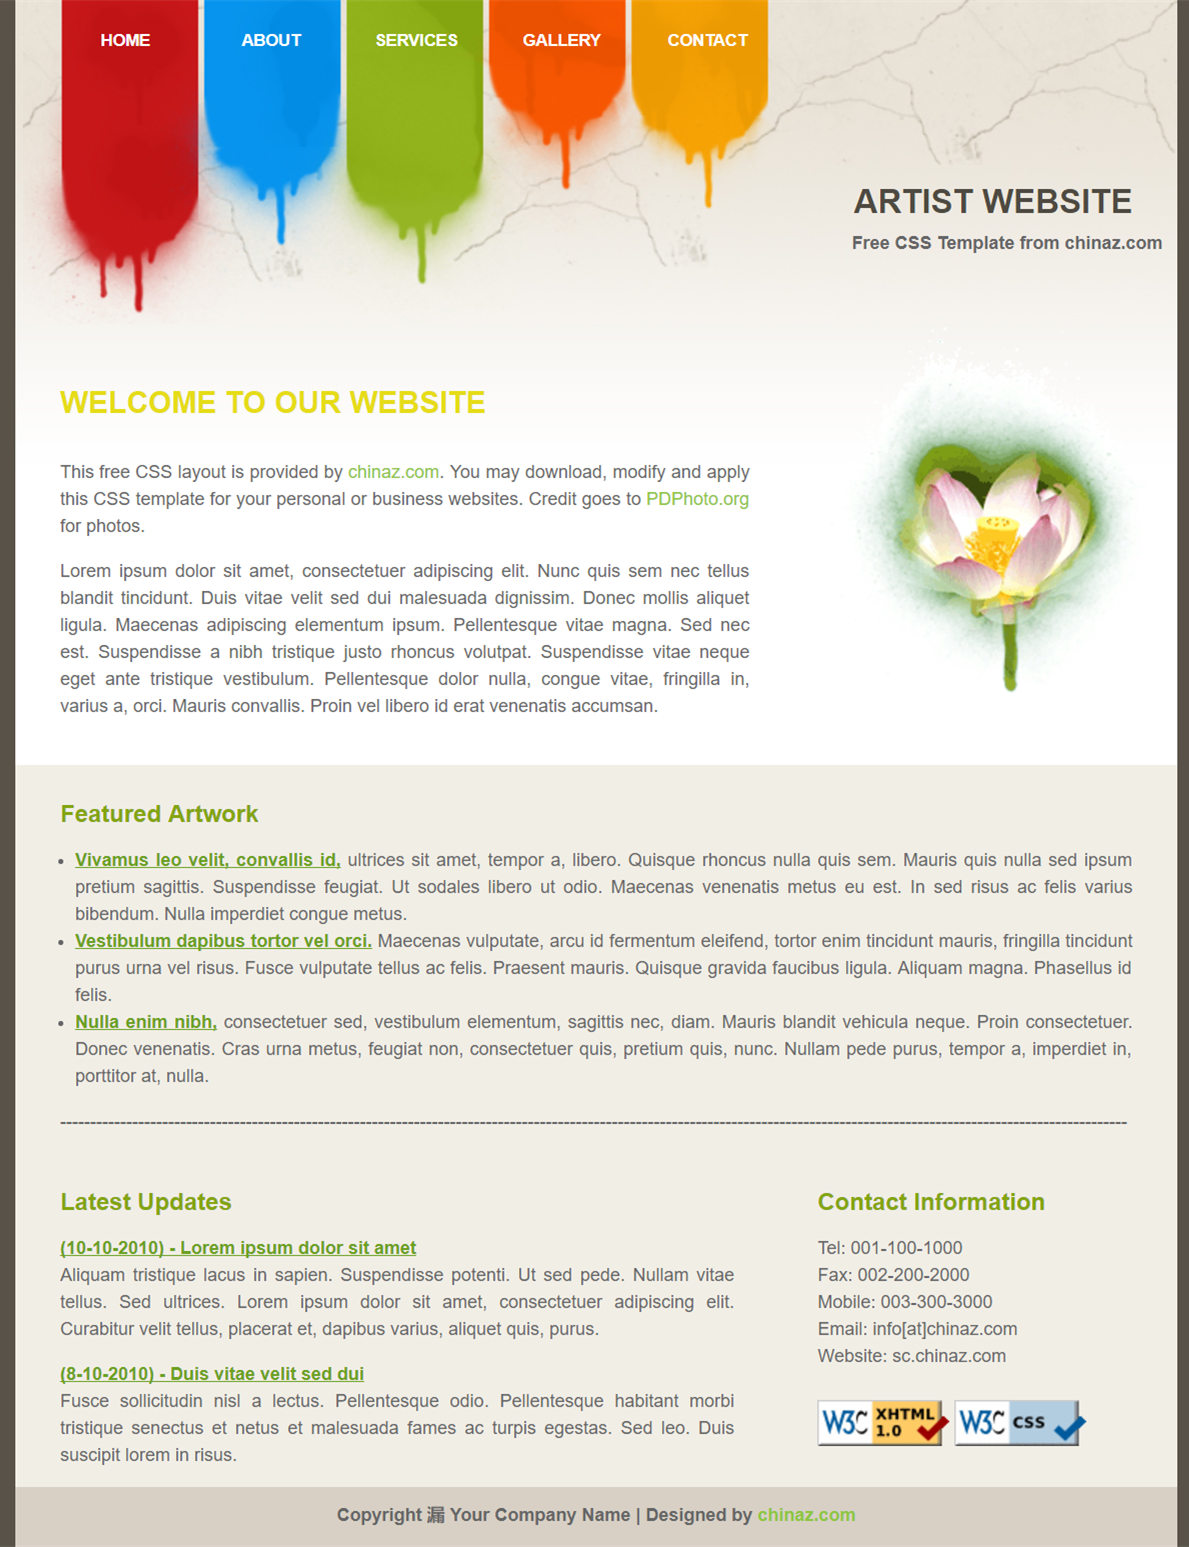 艺术创意风的信息服务企业网站模板下载